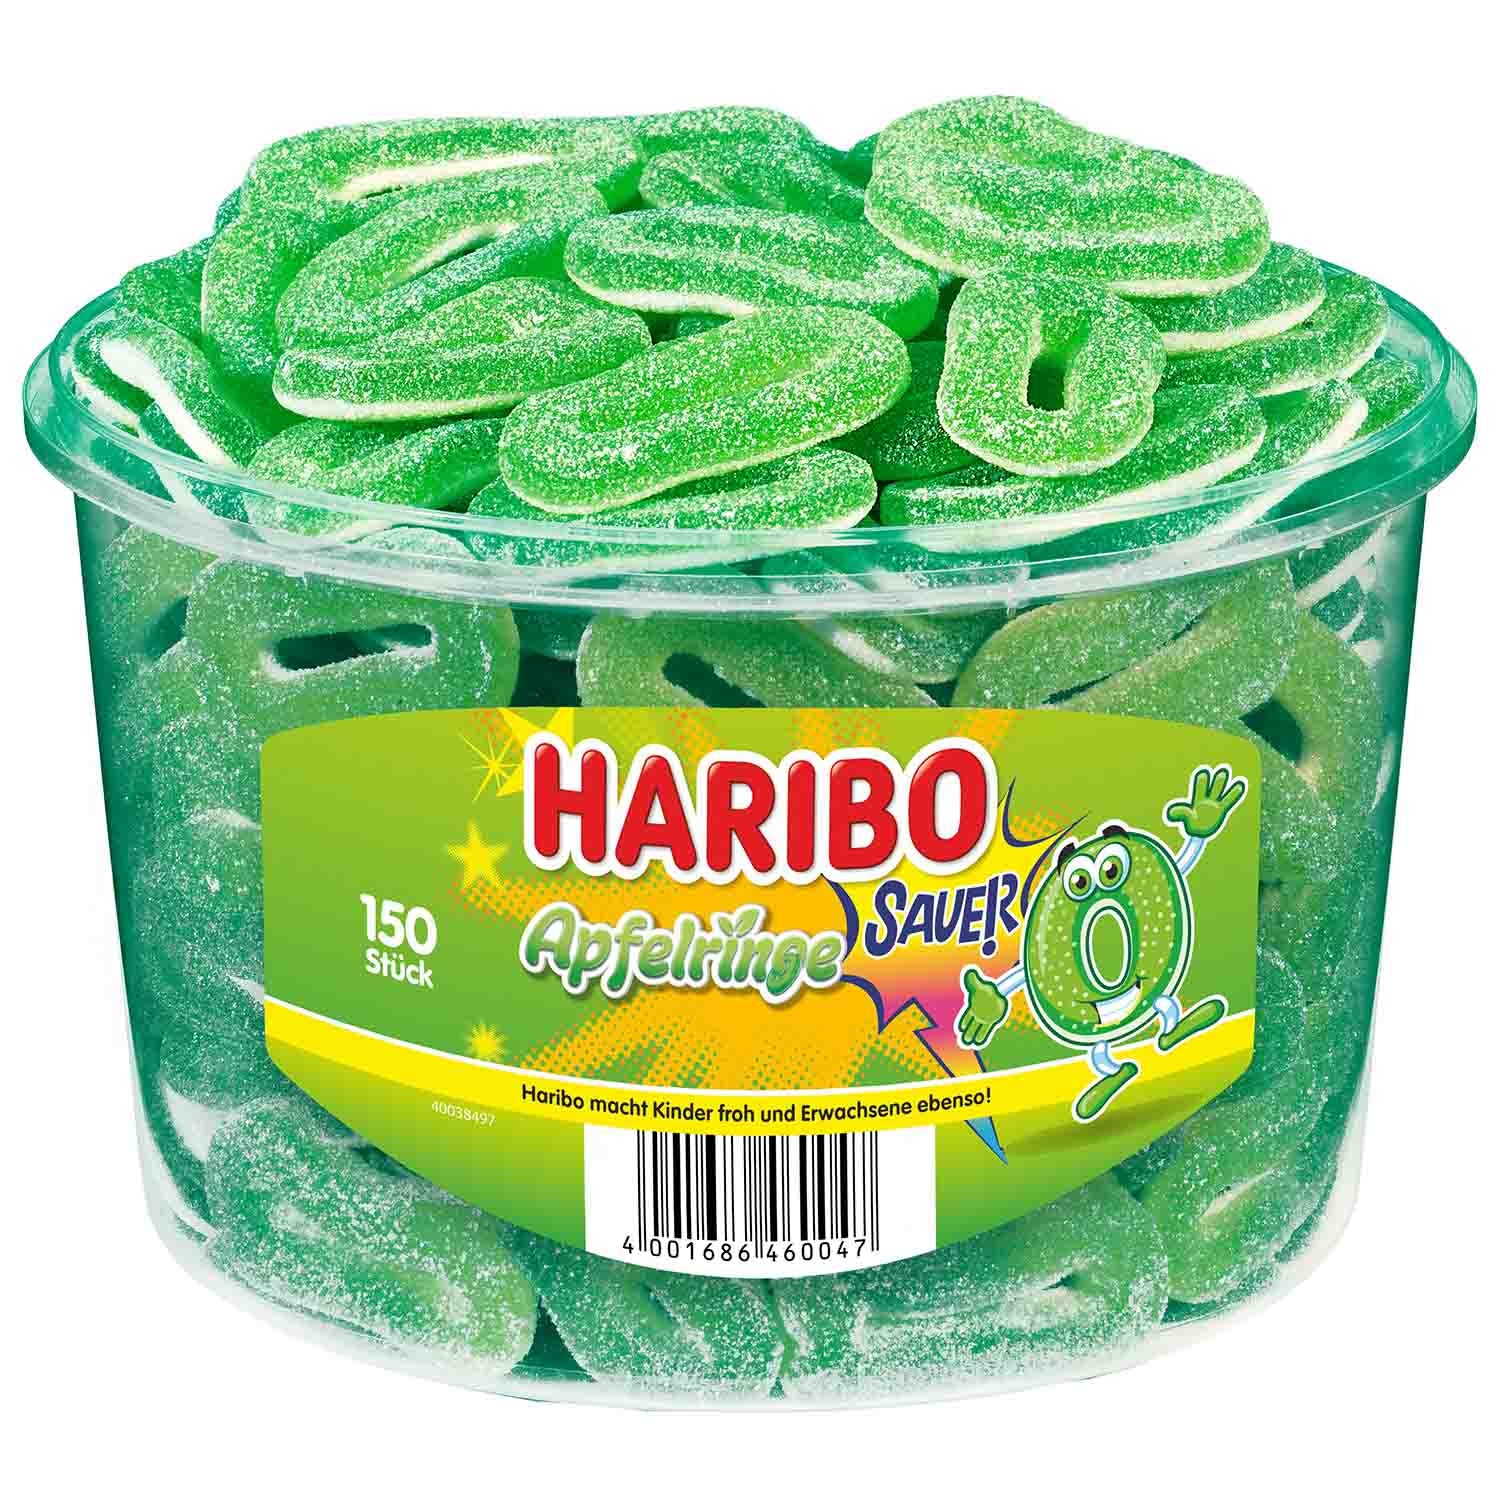 Haribo Apfelringe sauer 150er - Candyshop.ch